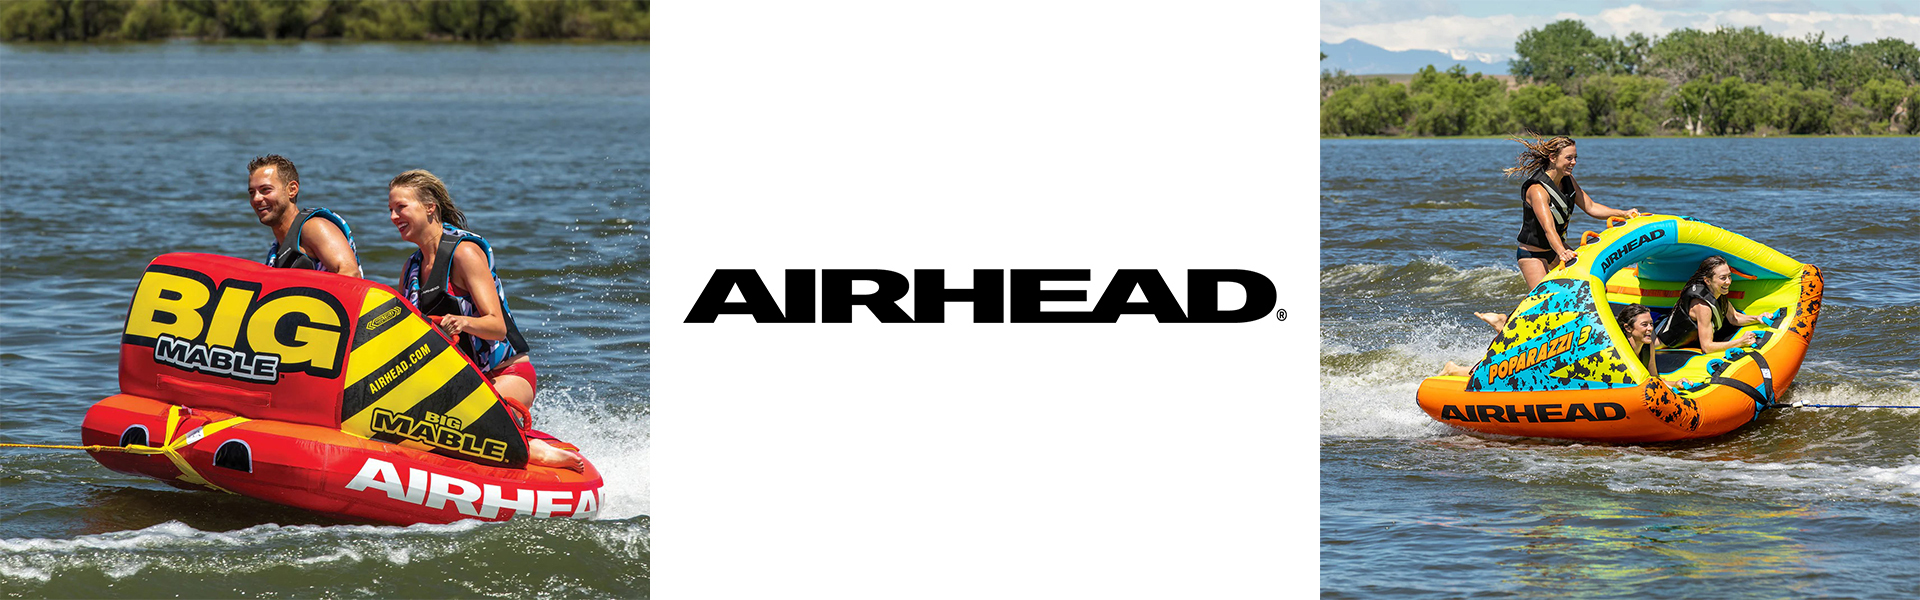 airhead-final-brand-banner.jpg